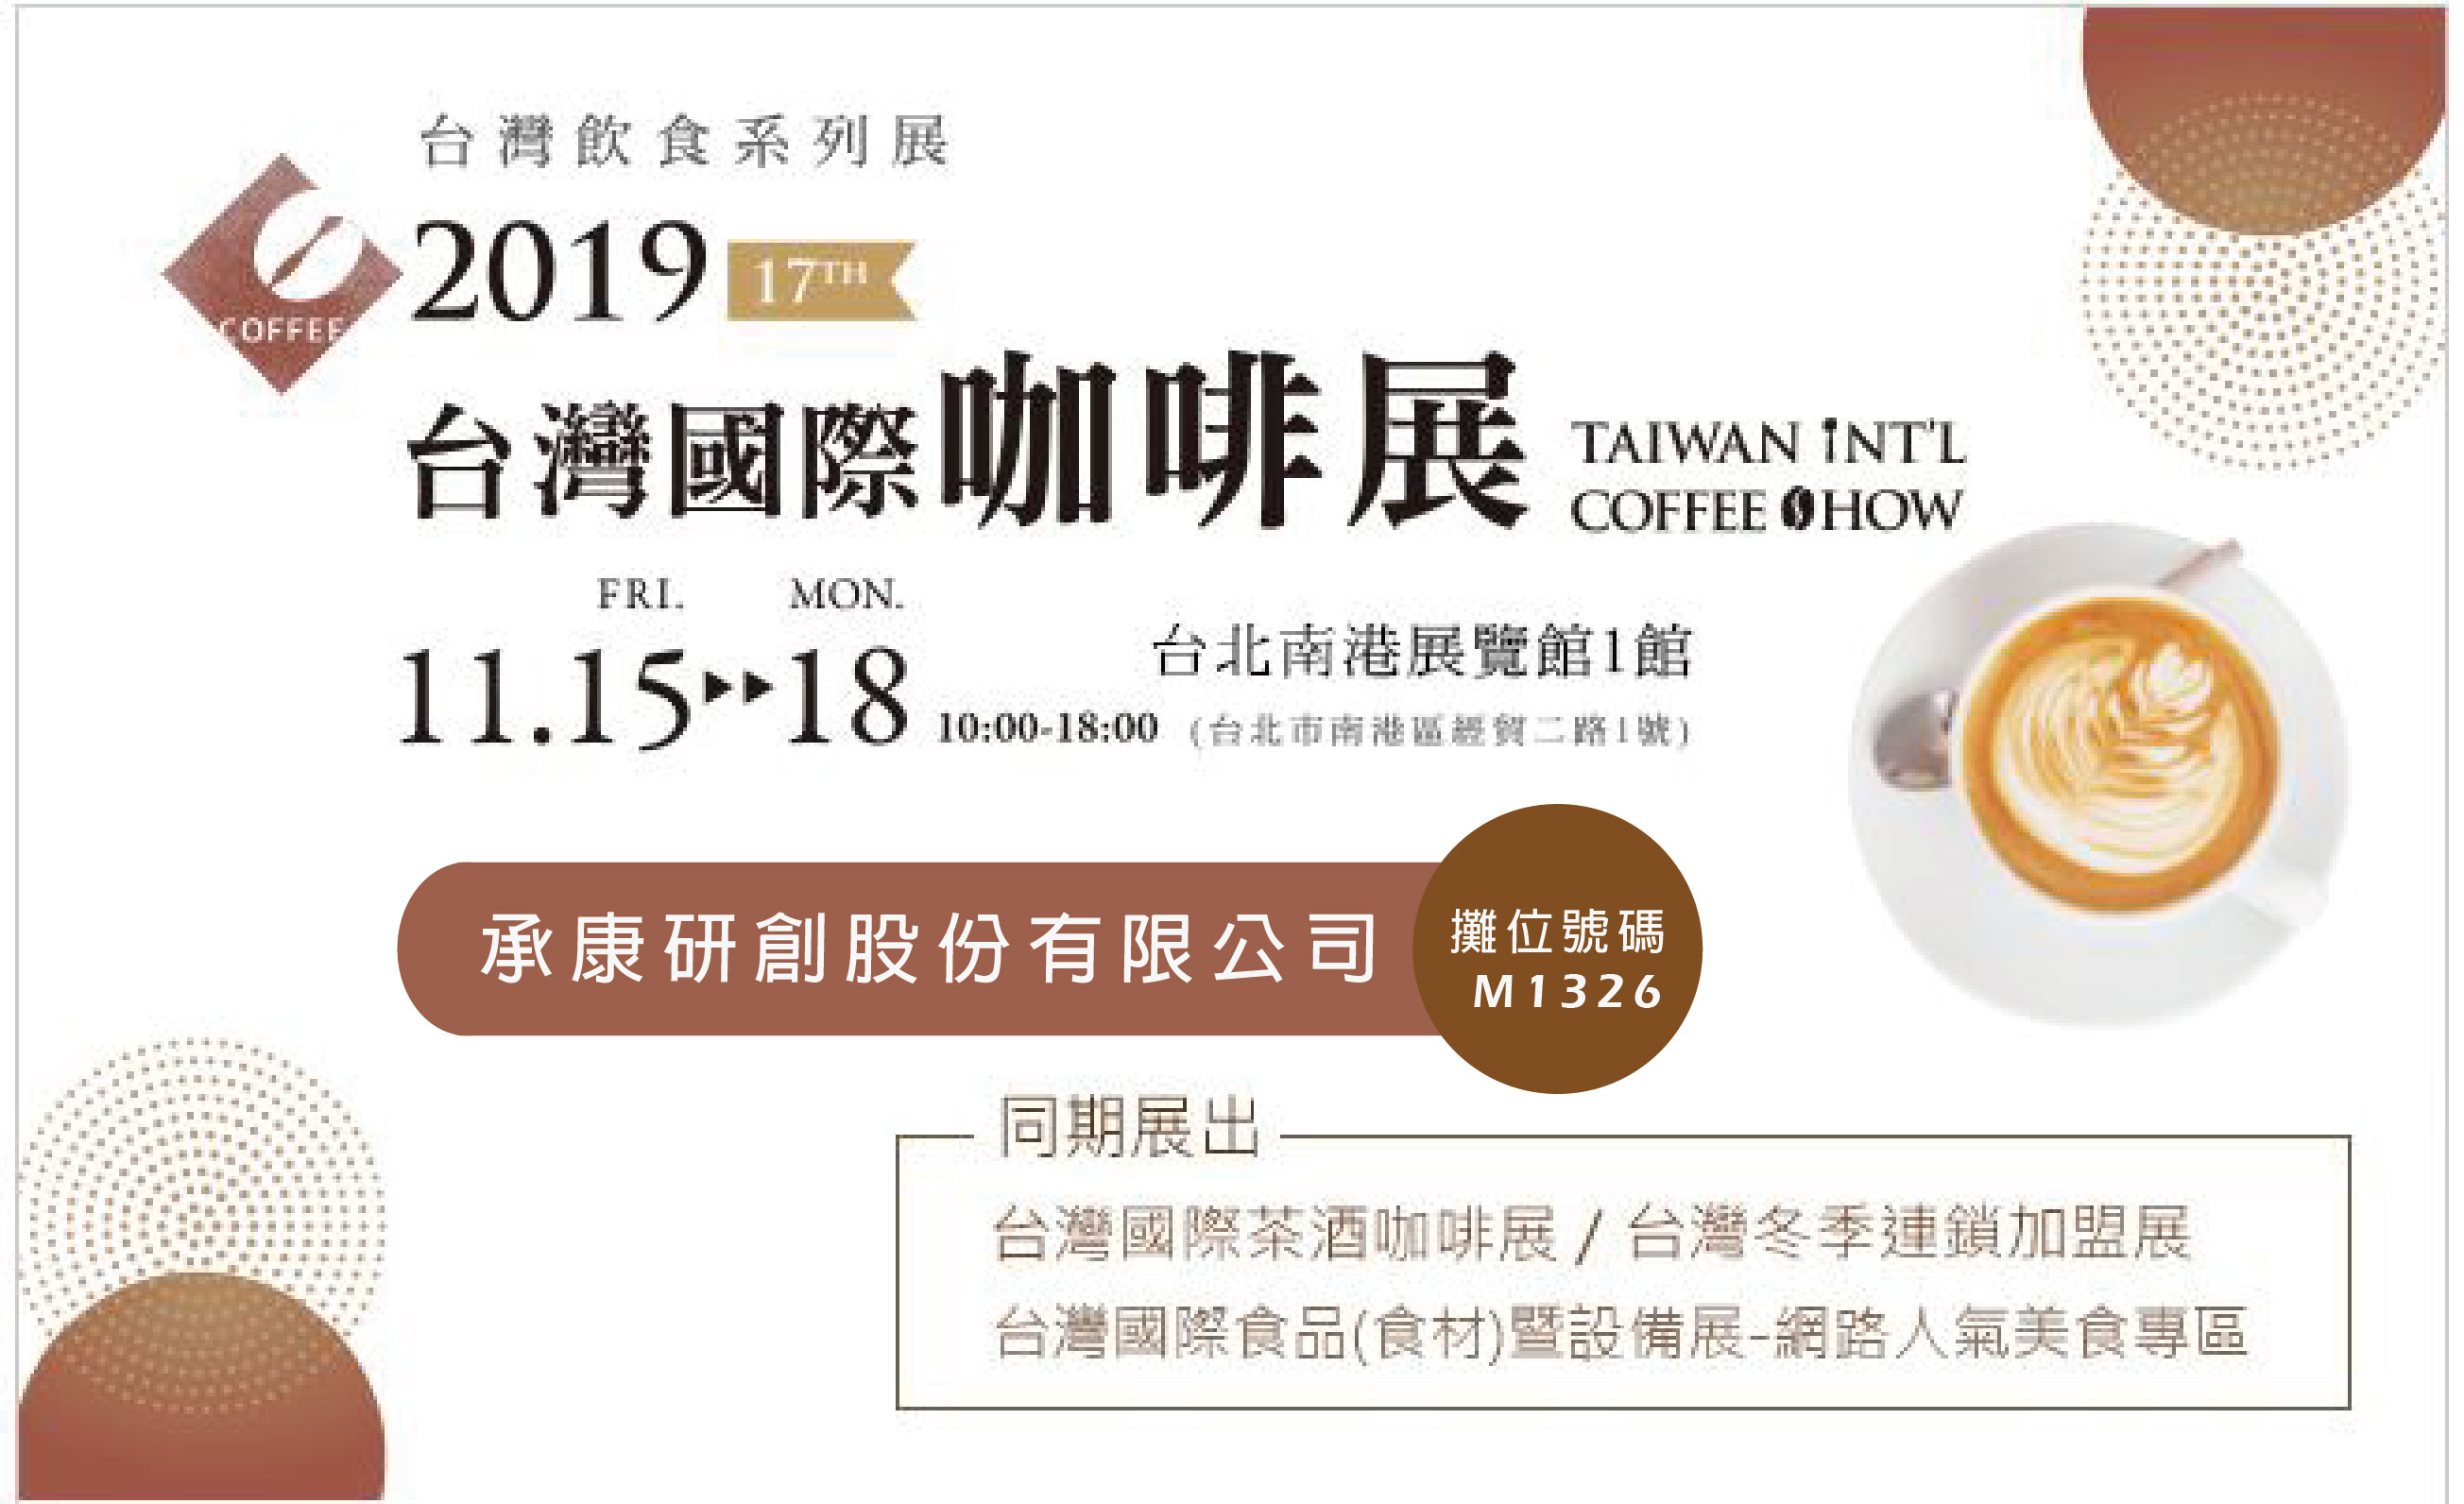 2019 11月15(五)-11月18日(一) 台灣國際咖啡展